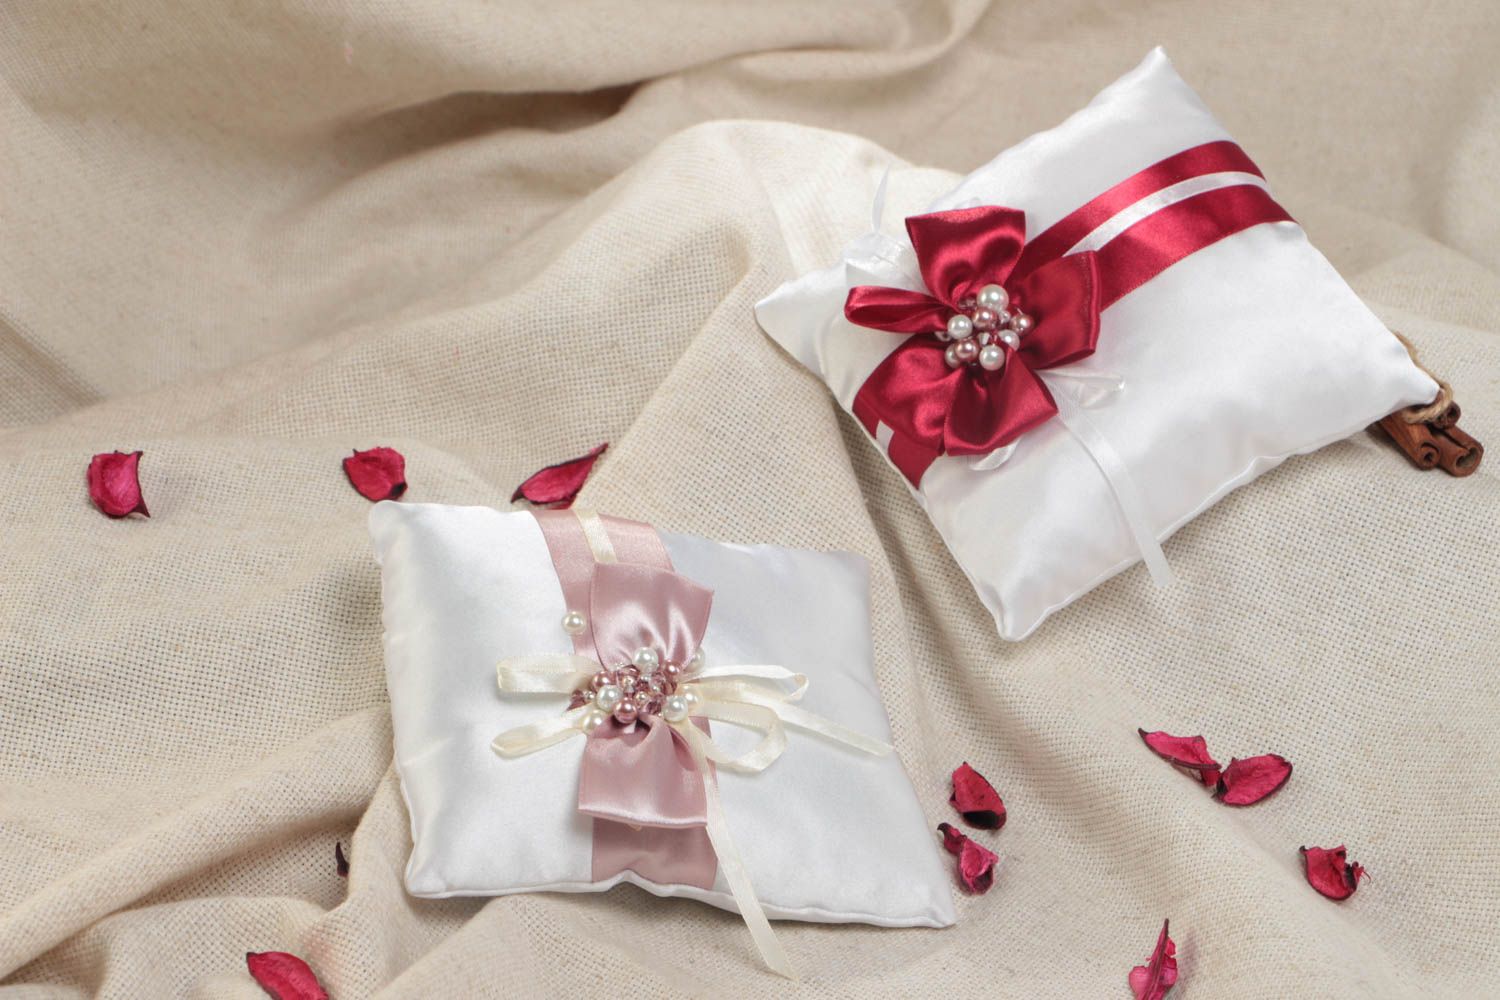 Набор свадебных подушечек для колец с бантиками из атласа ручной работы 2 штуки фото 1